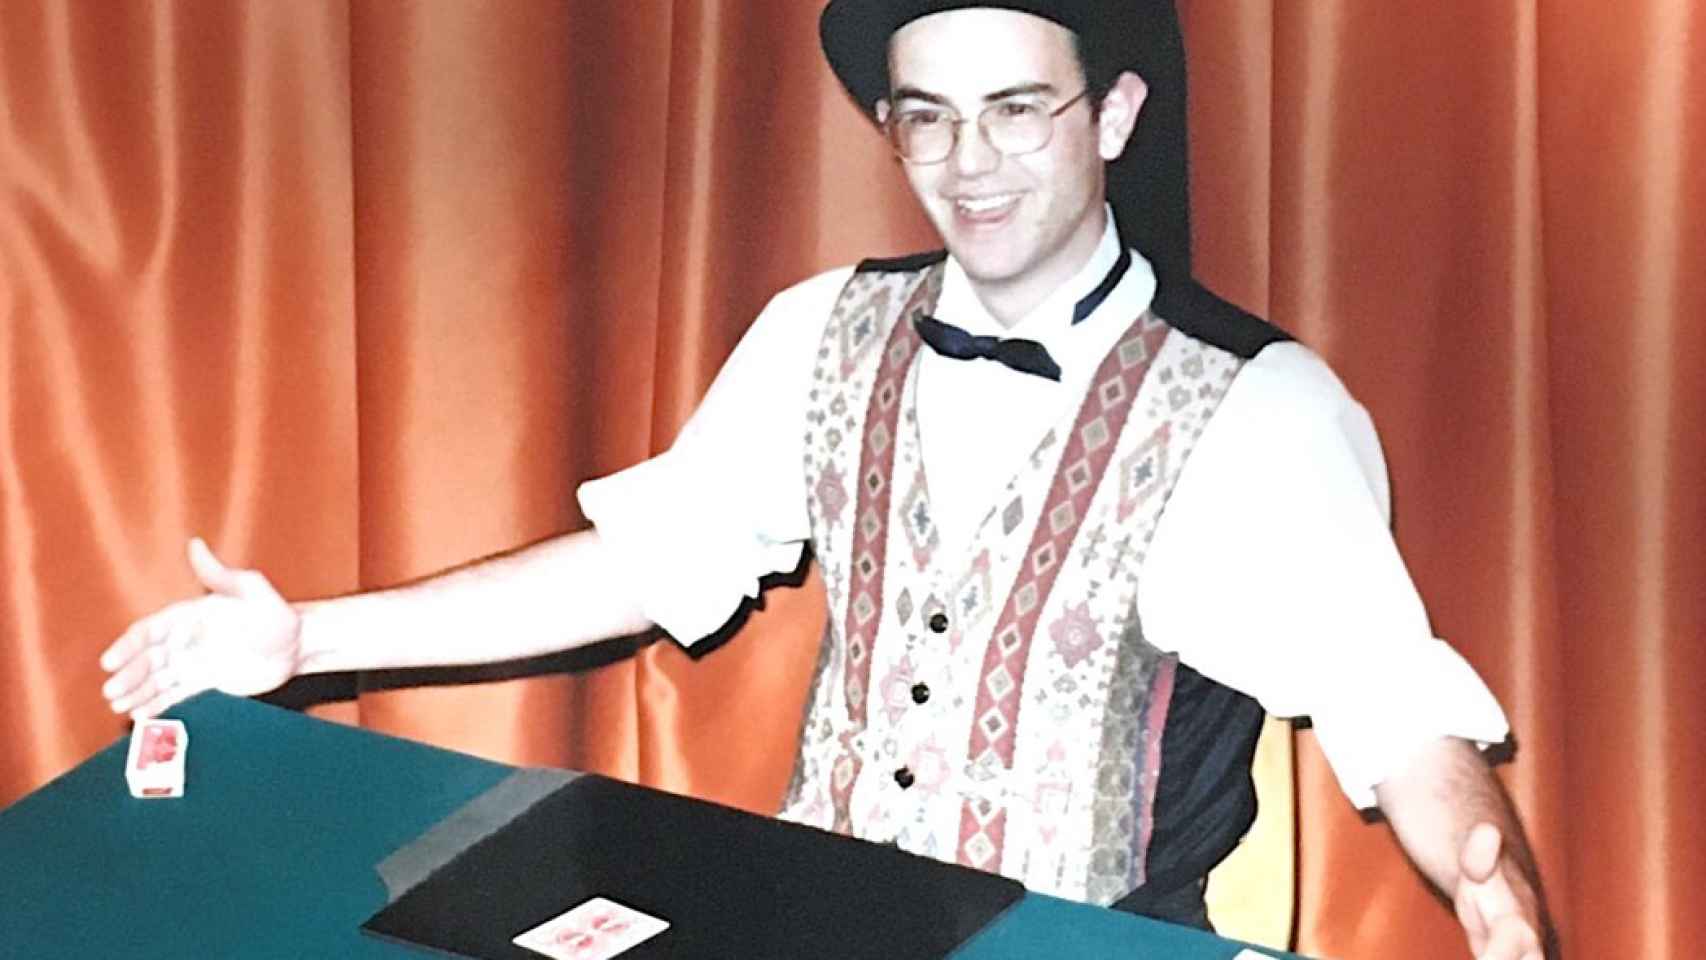 El mago en una de sus funciones de magia en su época adolescente.